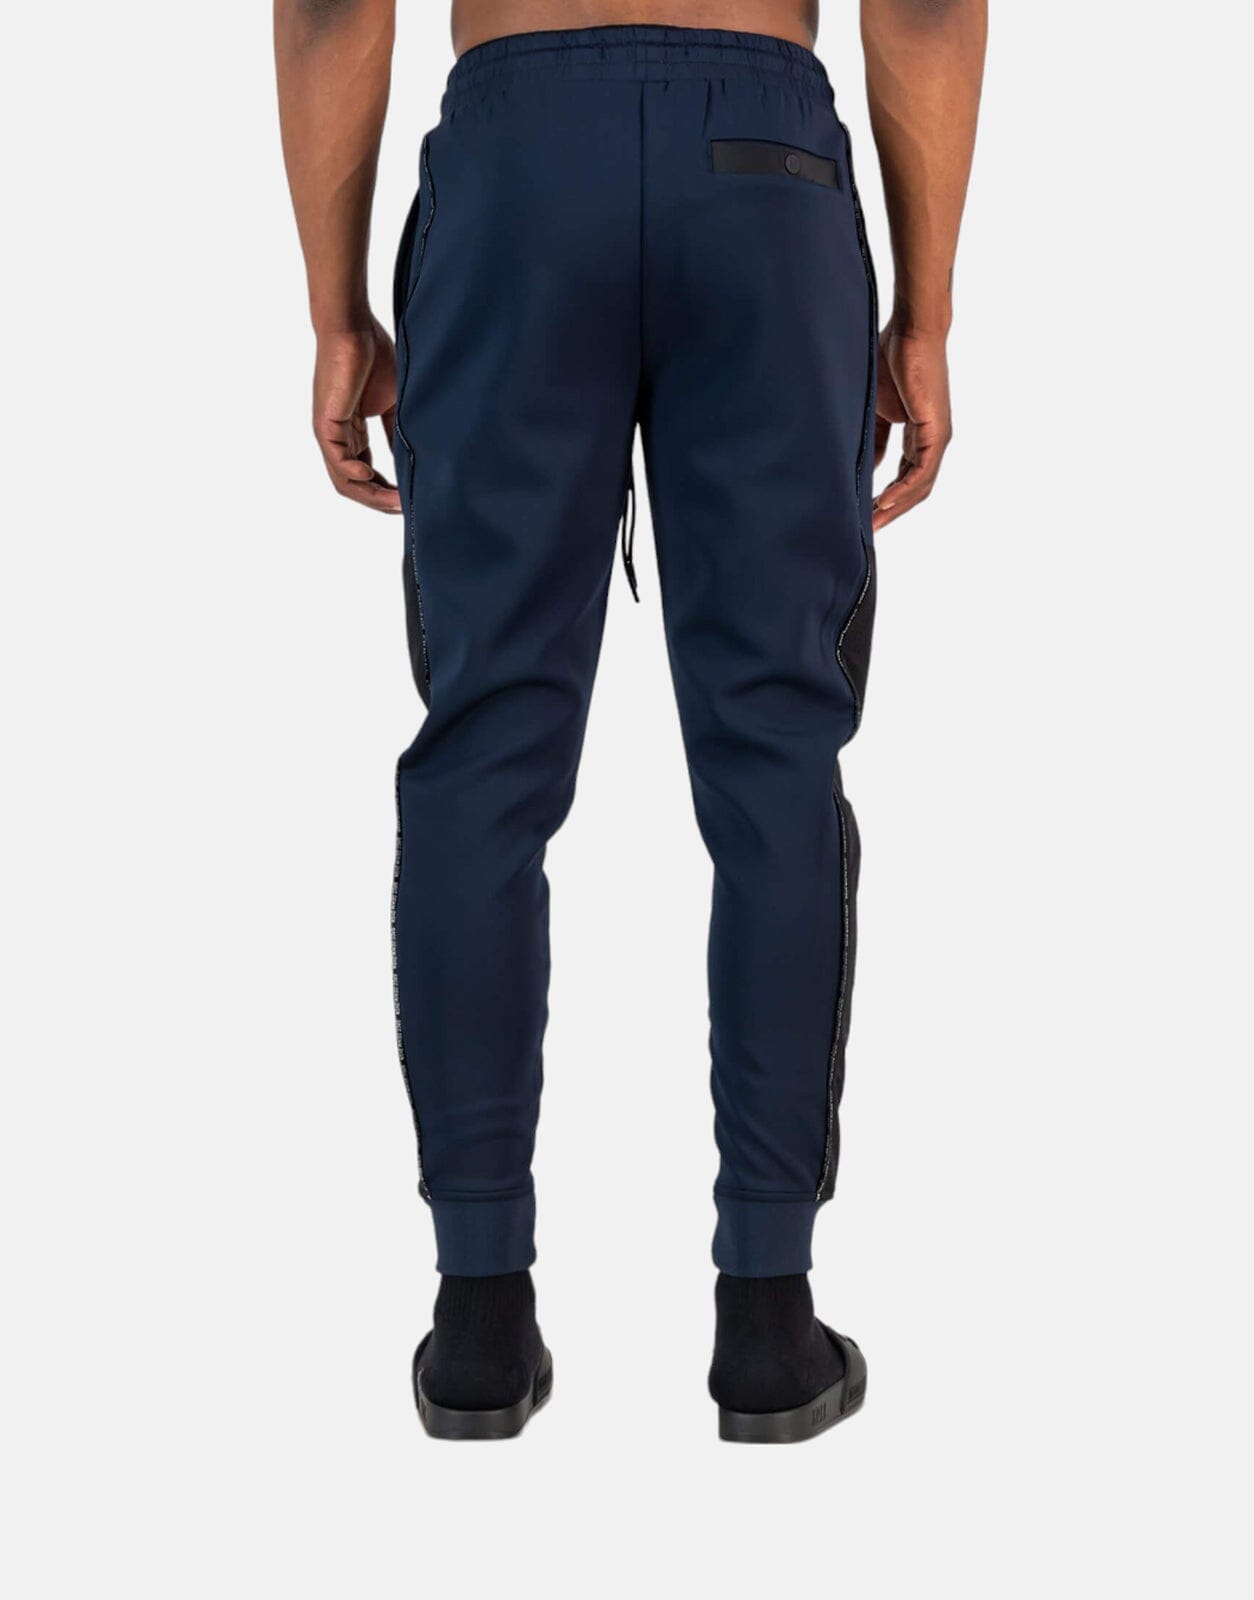 SPCC Kitson Navy Sweatpants - Subwear